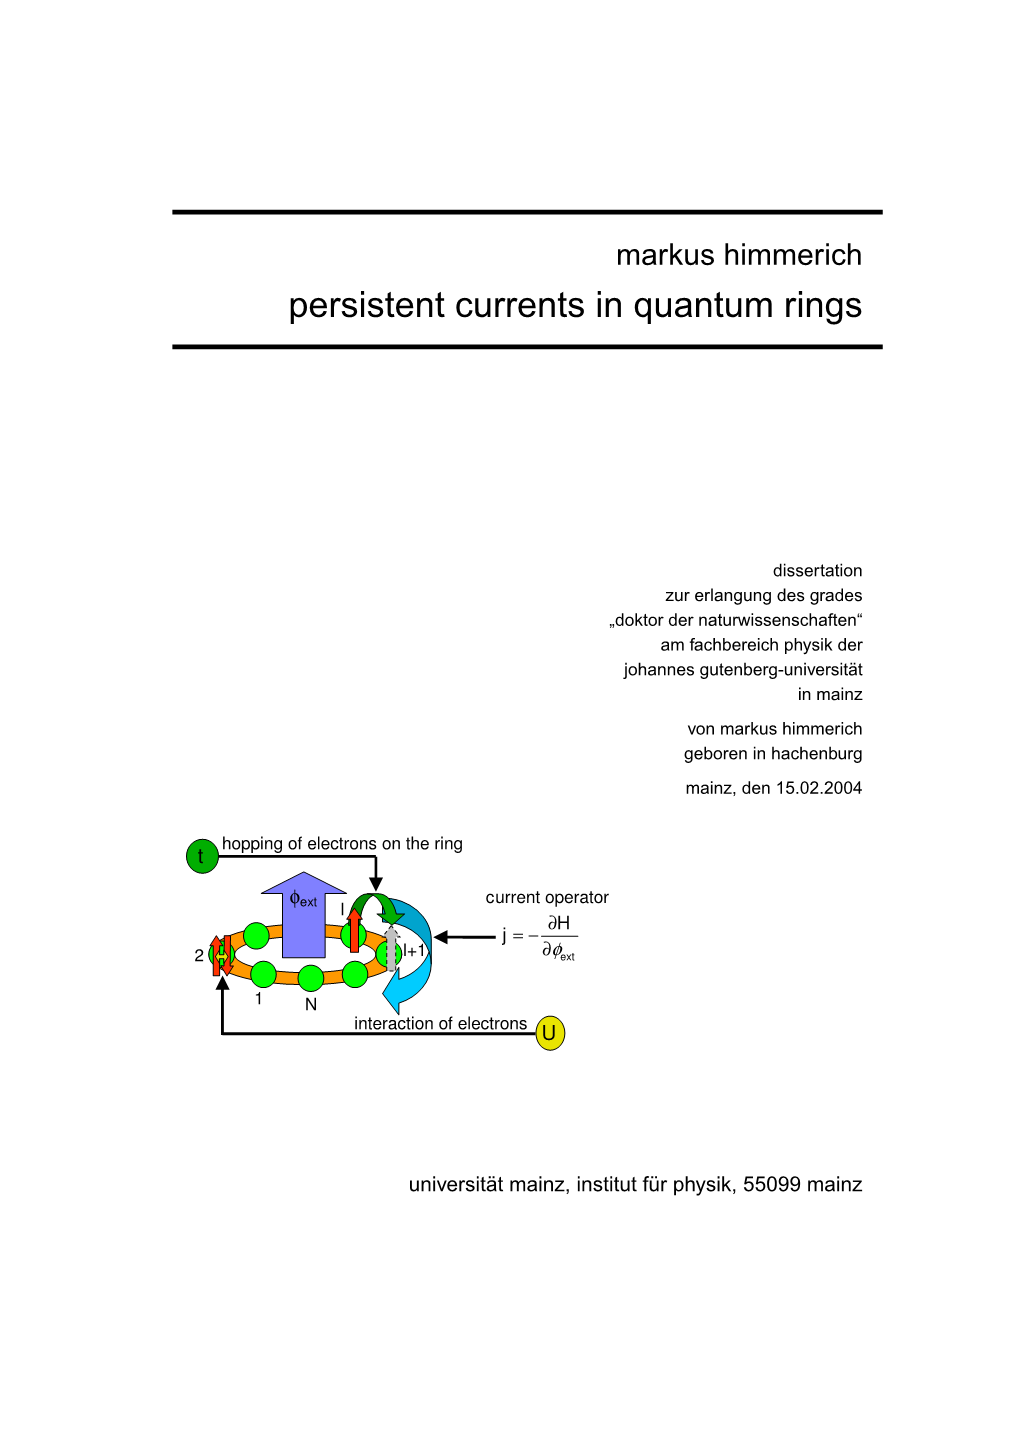 Persistent Currents in Quantum Rings